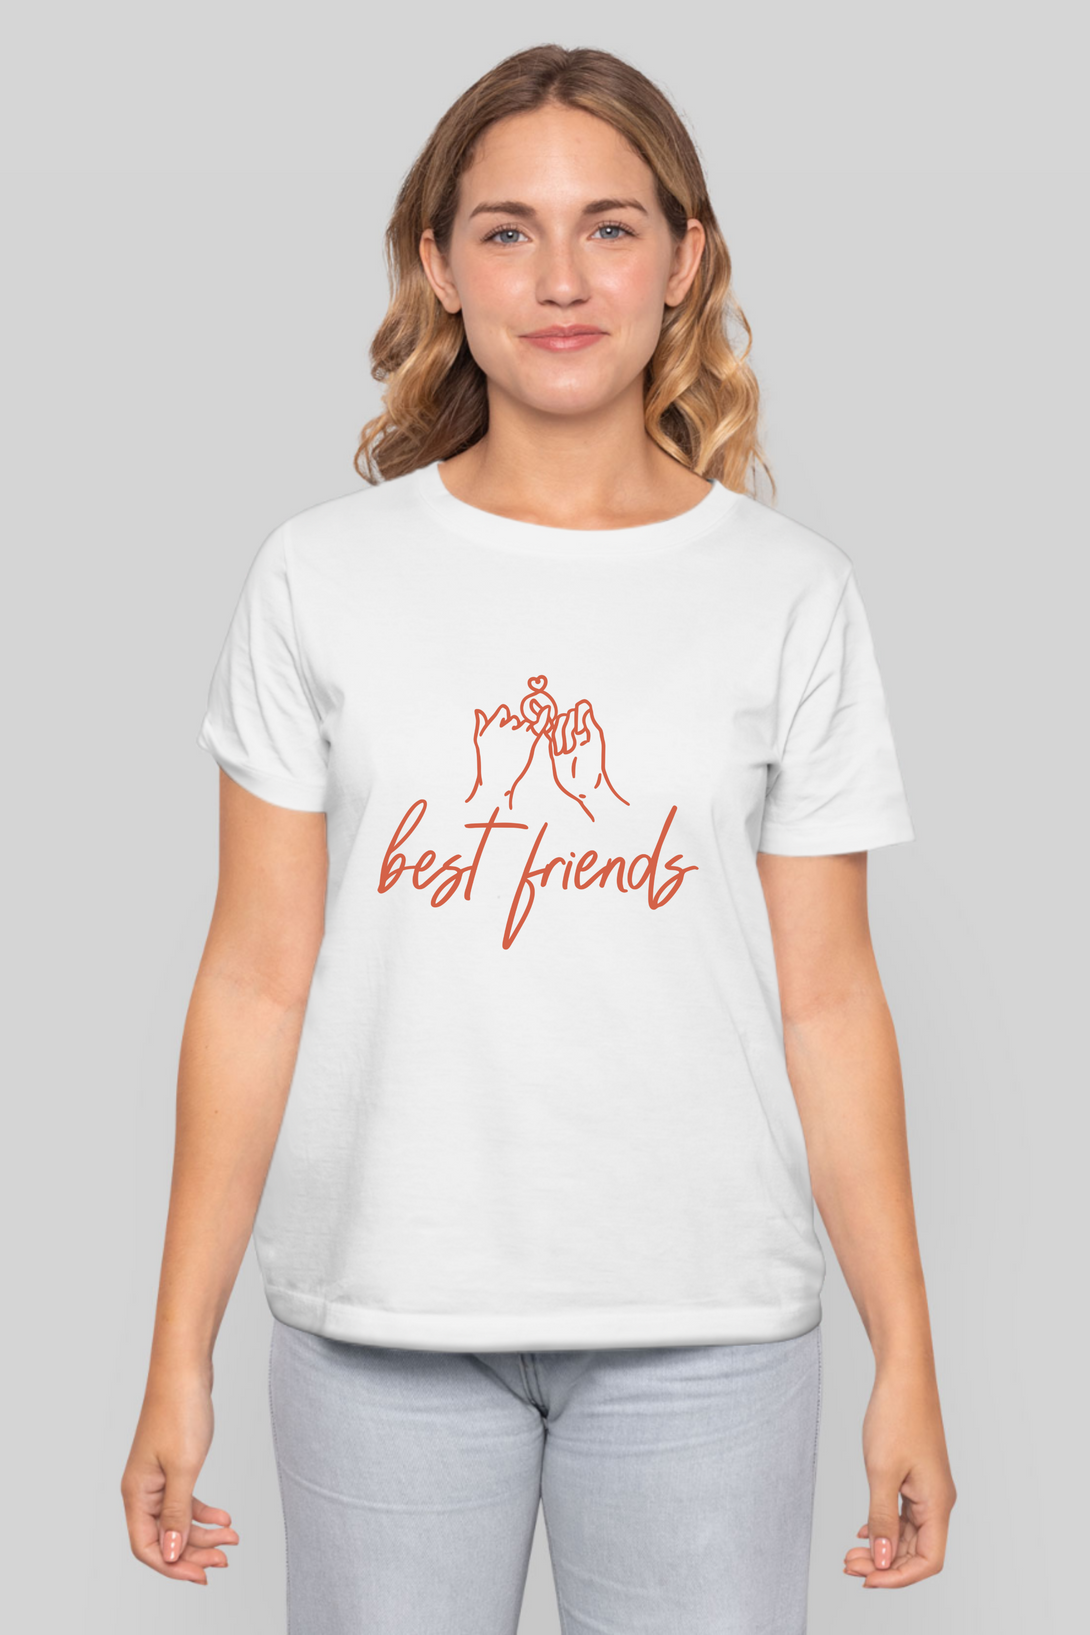 Best Friends Printed T-Shirt For Women - WowWaves - 8